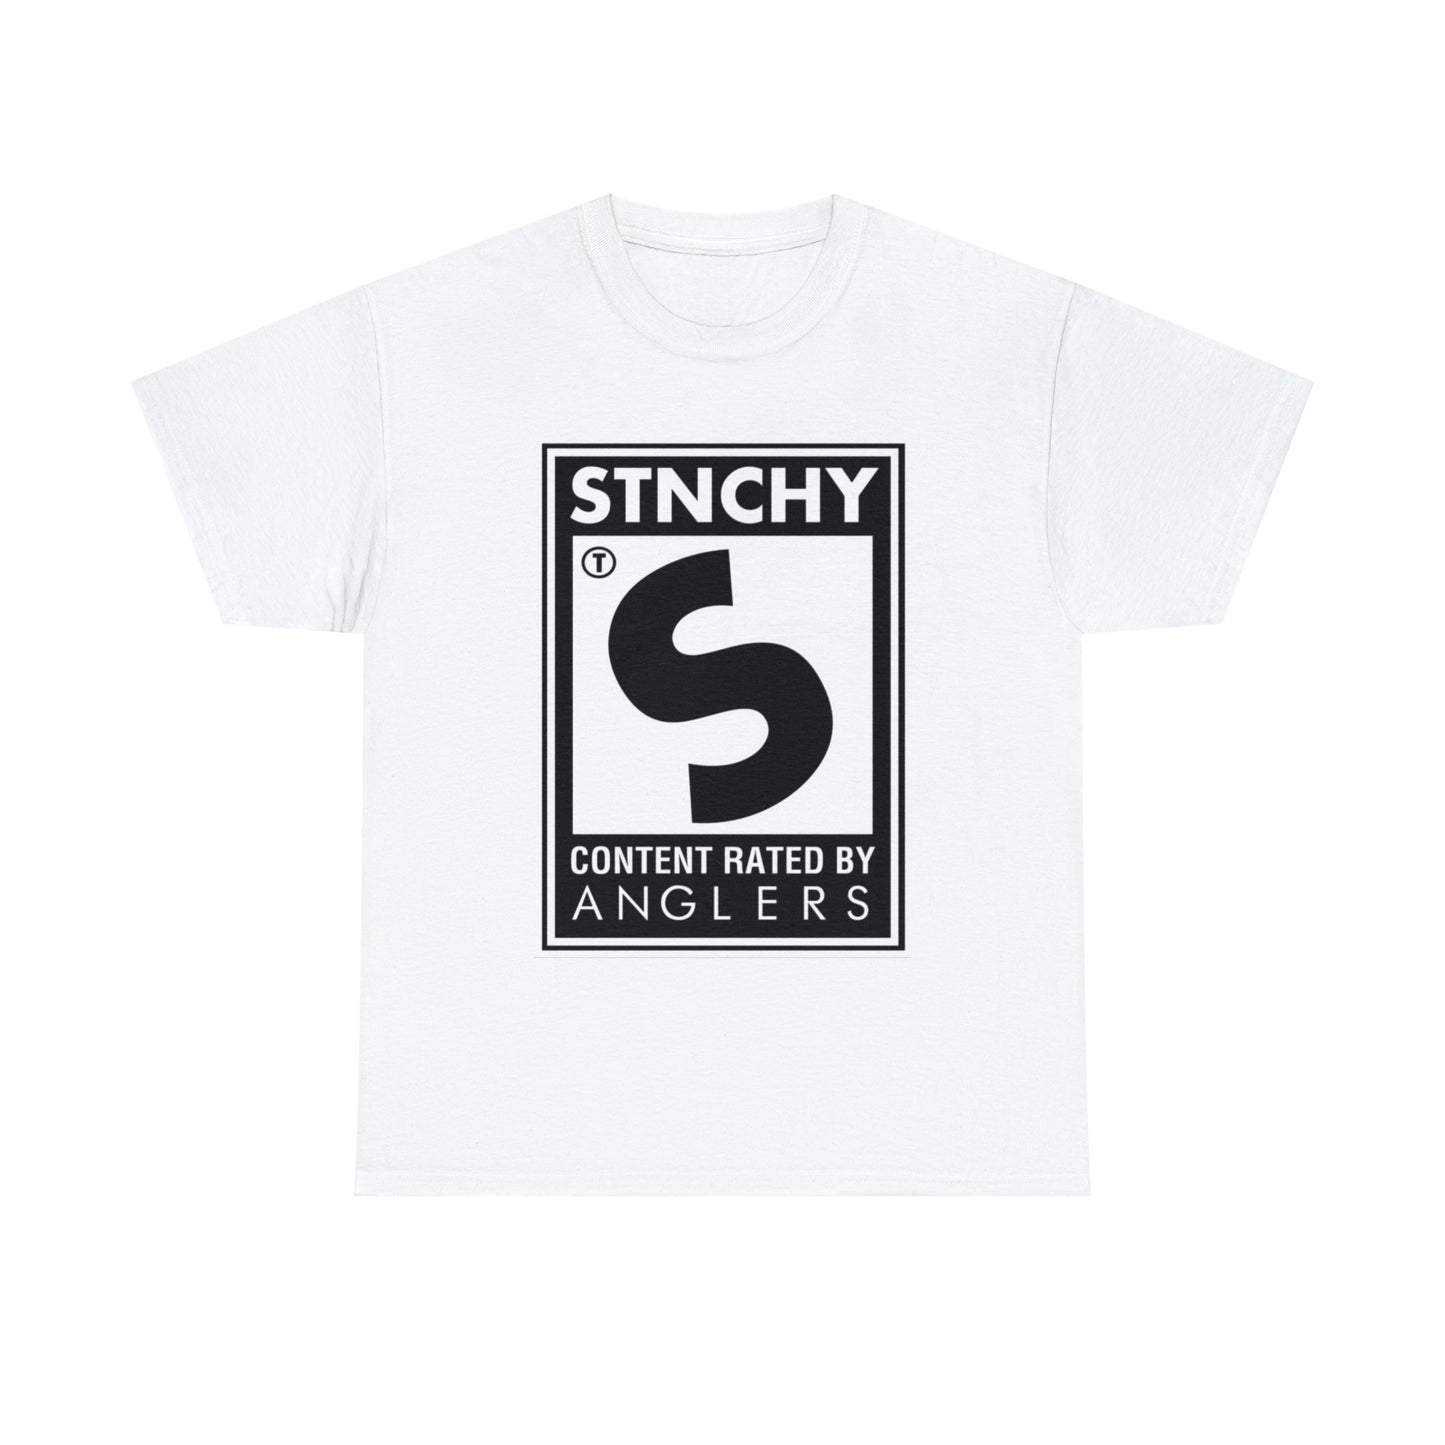 Stnchy Original T-Shirt